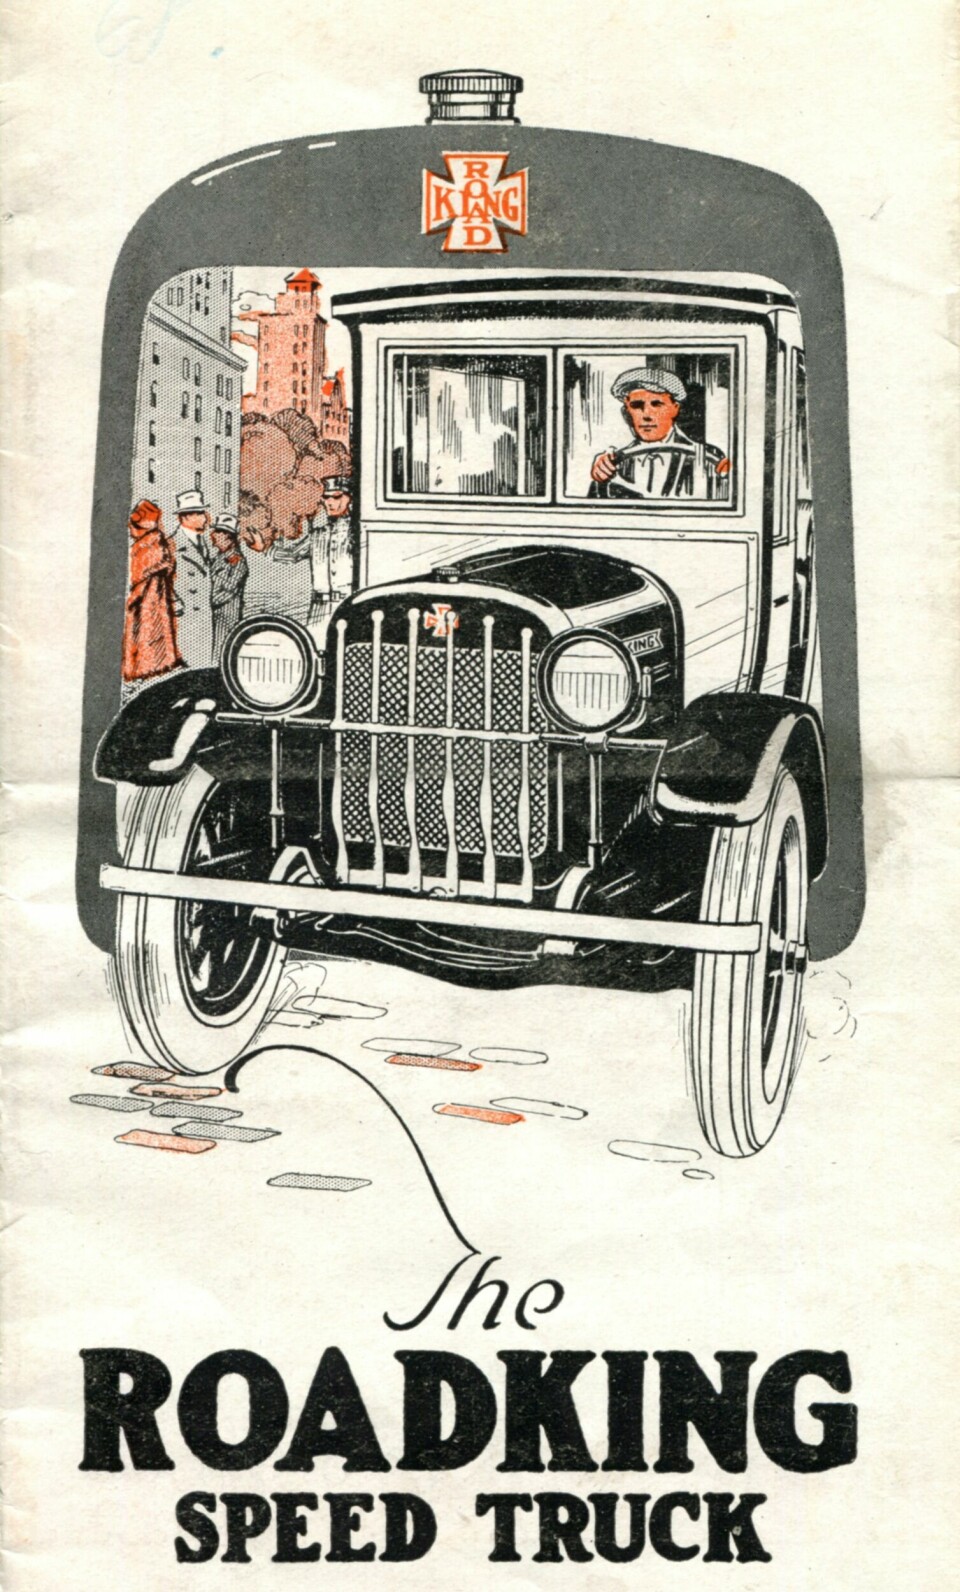 Speed Truck: Forsiden på en salgsbrosjyre for Mason Road King fra 1925. Forniklet radiatorgitter var standard.